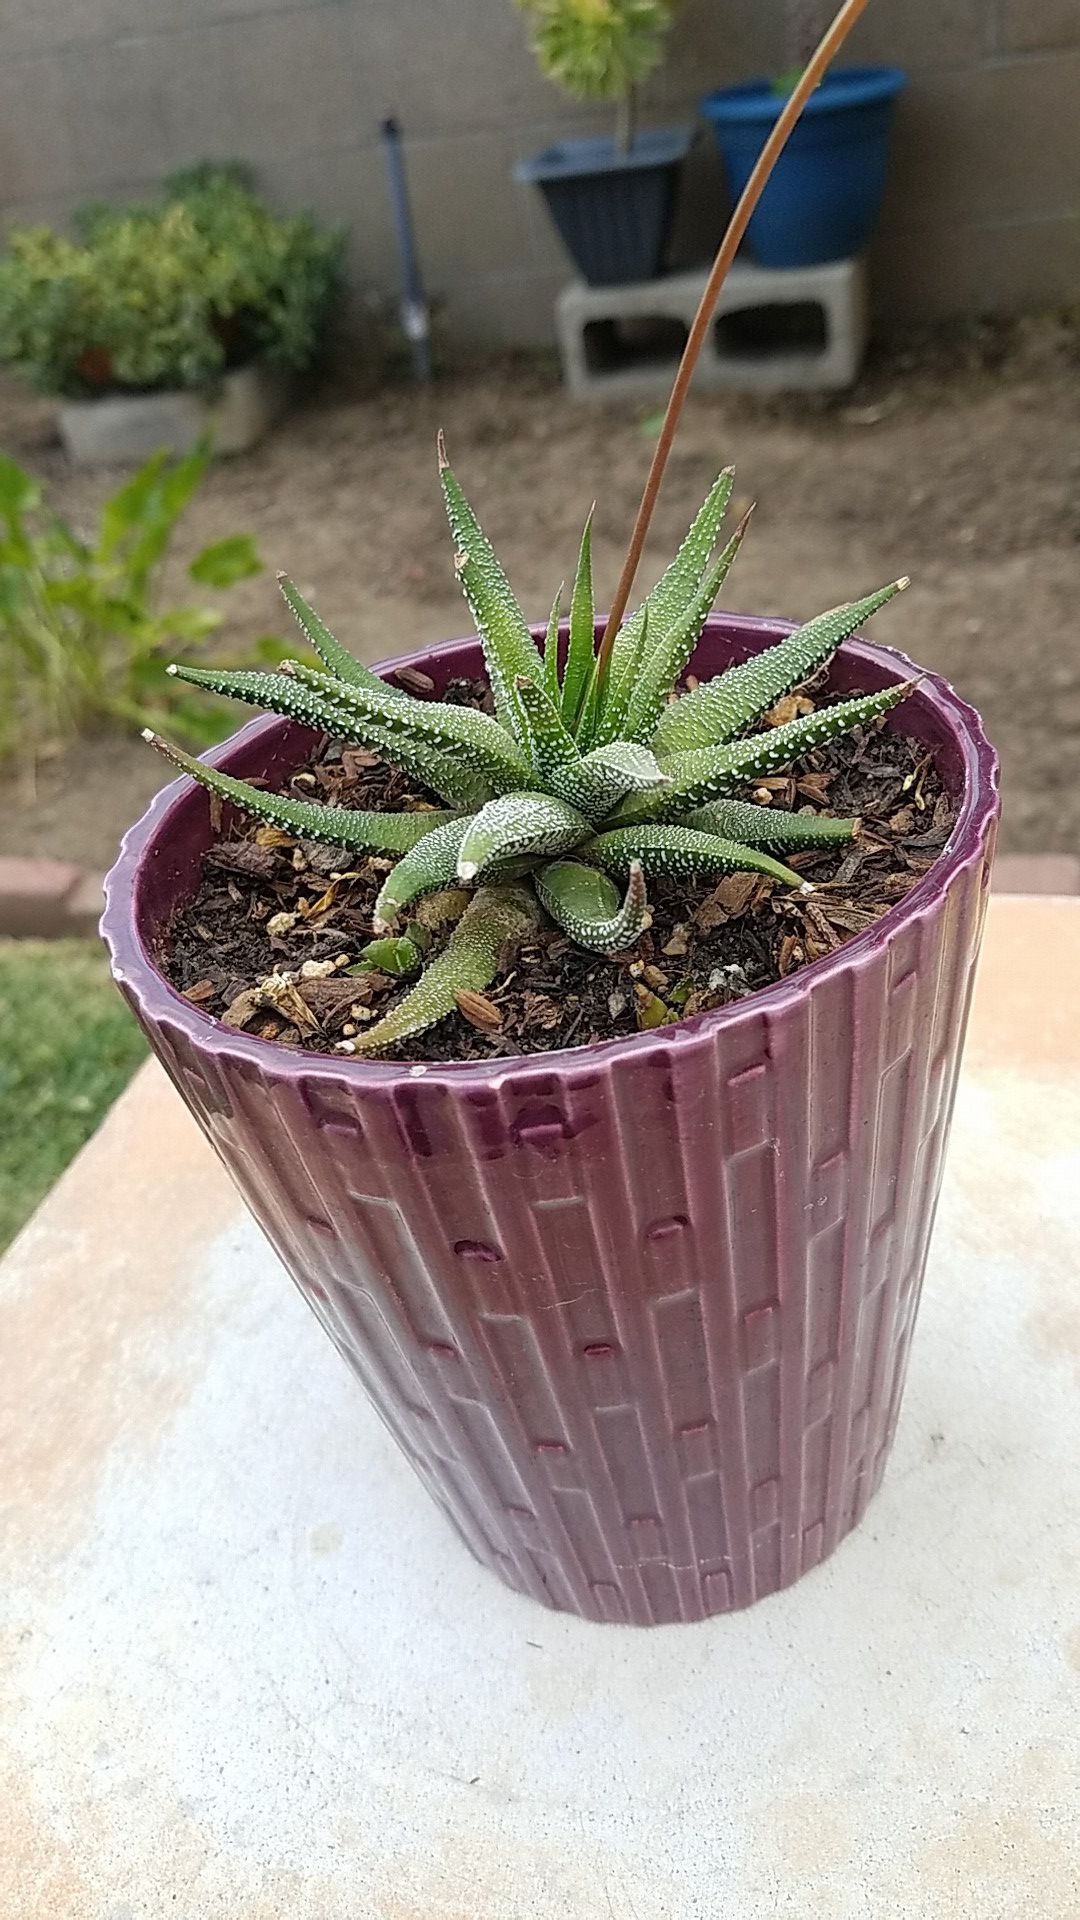 Cactus succulent, miniature aloe vera